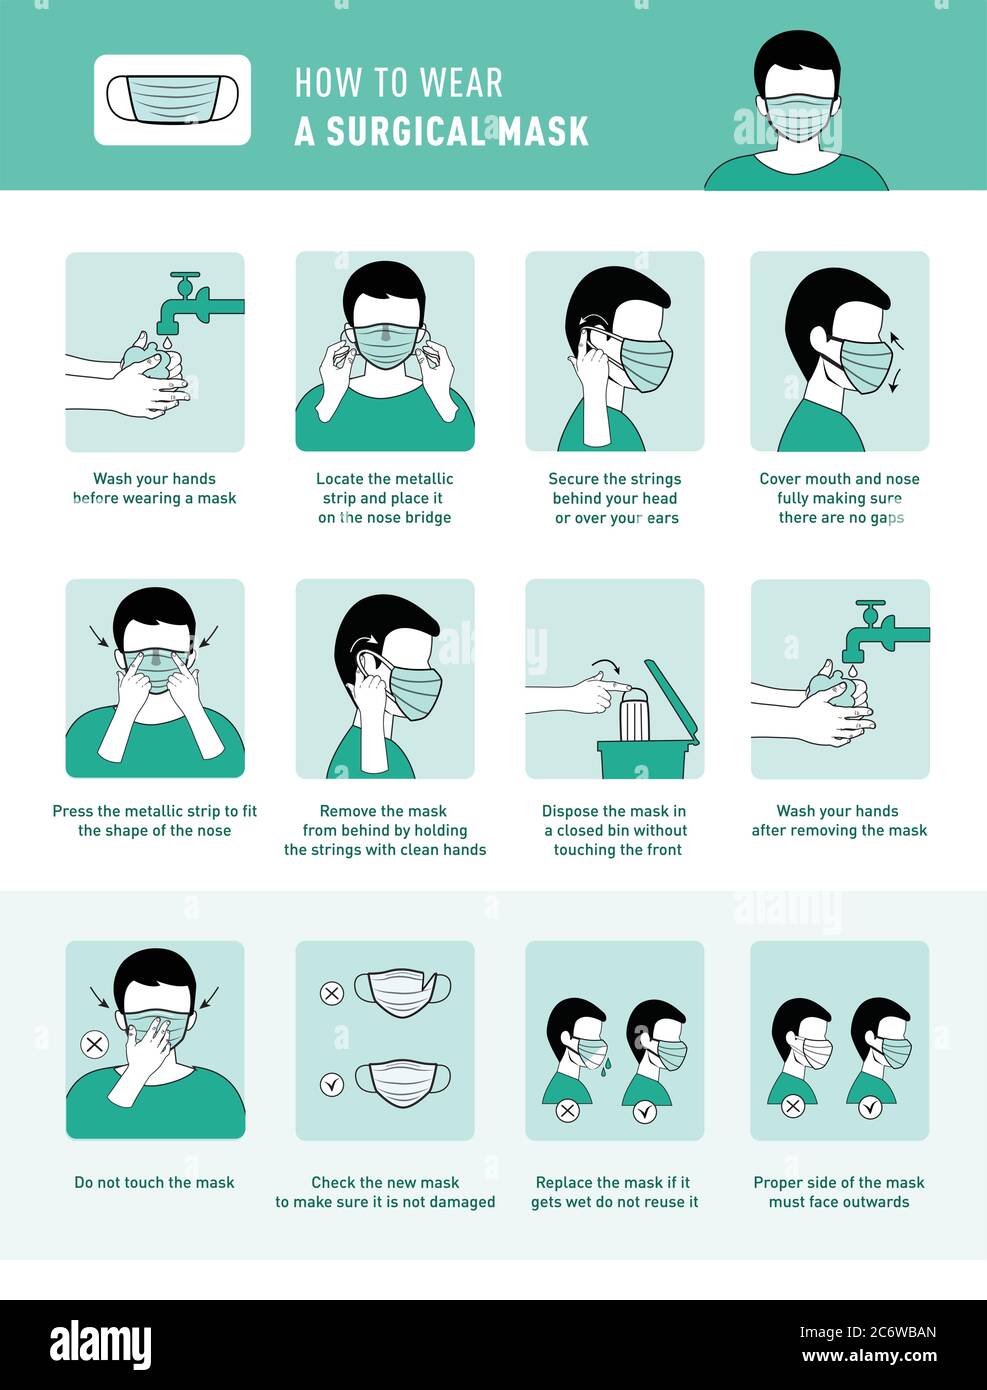 Come indossare la maschera medica e come rimuovere correttamente la maschera medica. Illustrazione infografica dettagliata di come indossare e rimuovere una maschera chirurgica. Illustrazione Vettoriale